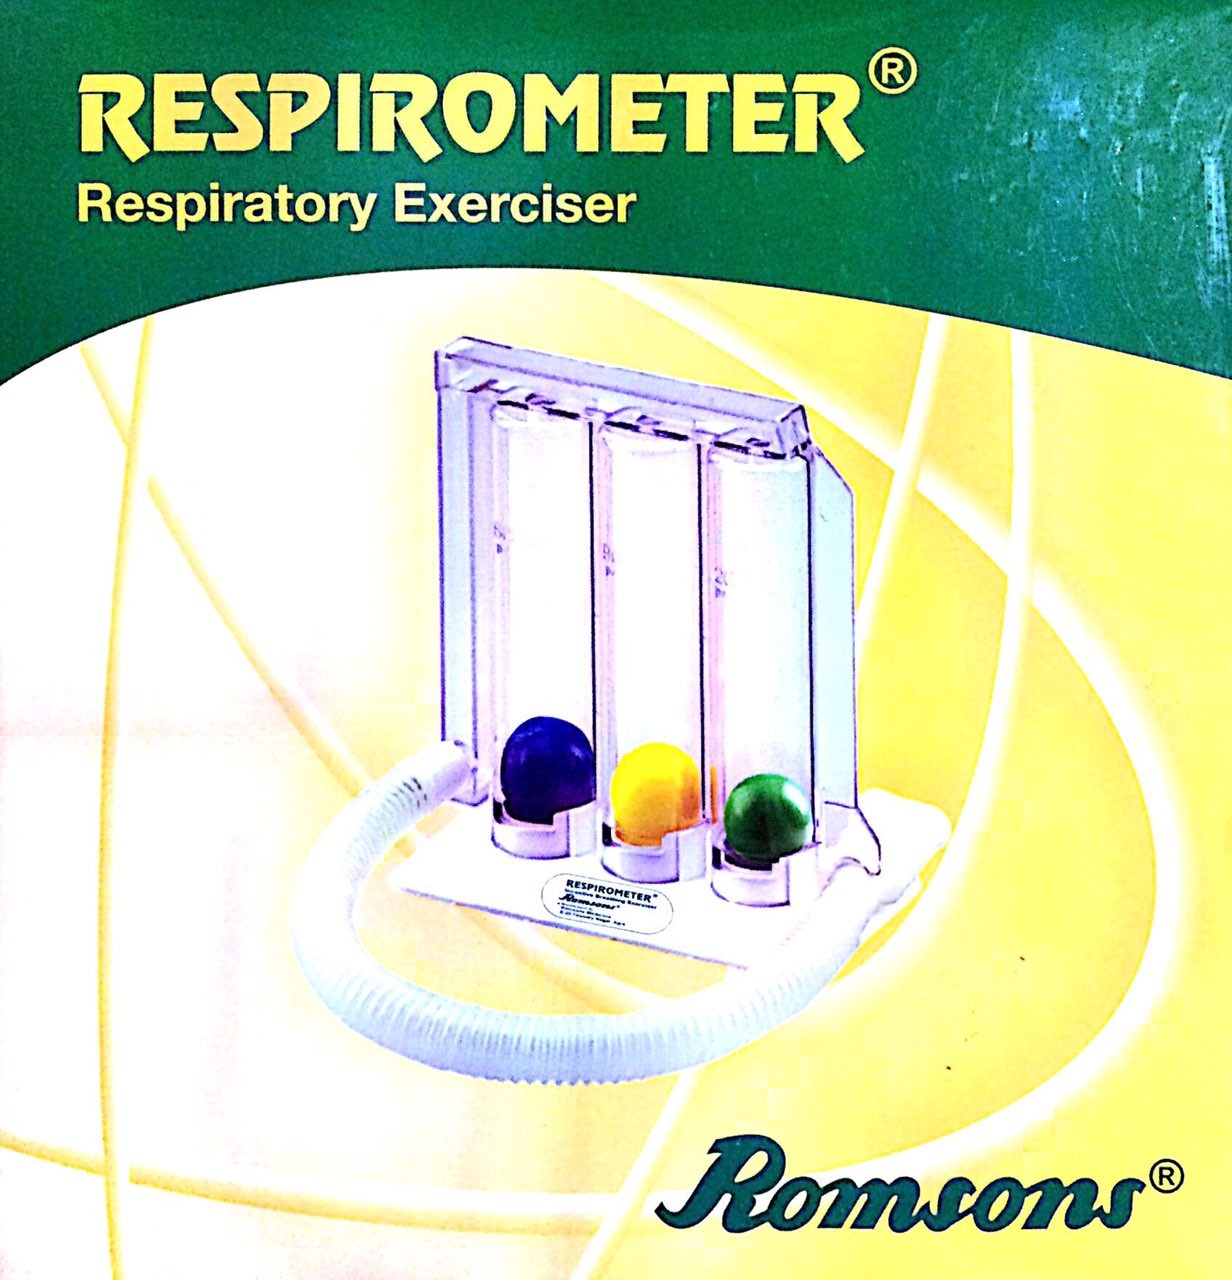 Respirometer Mfg. By Romsons-v